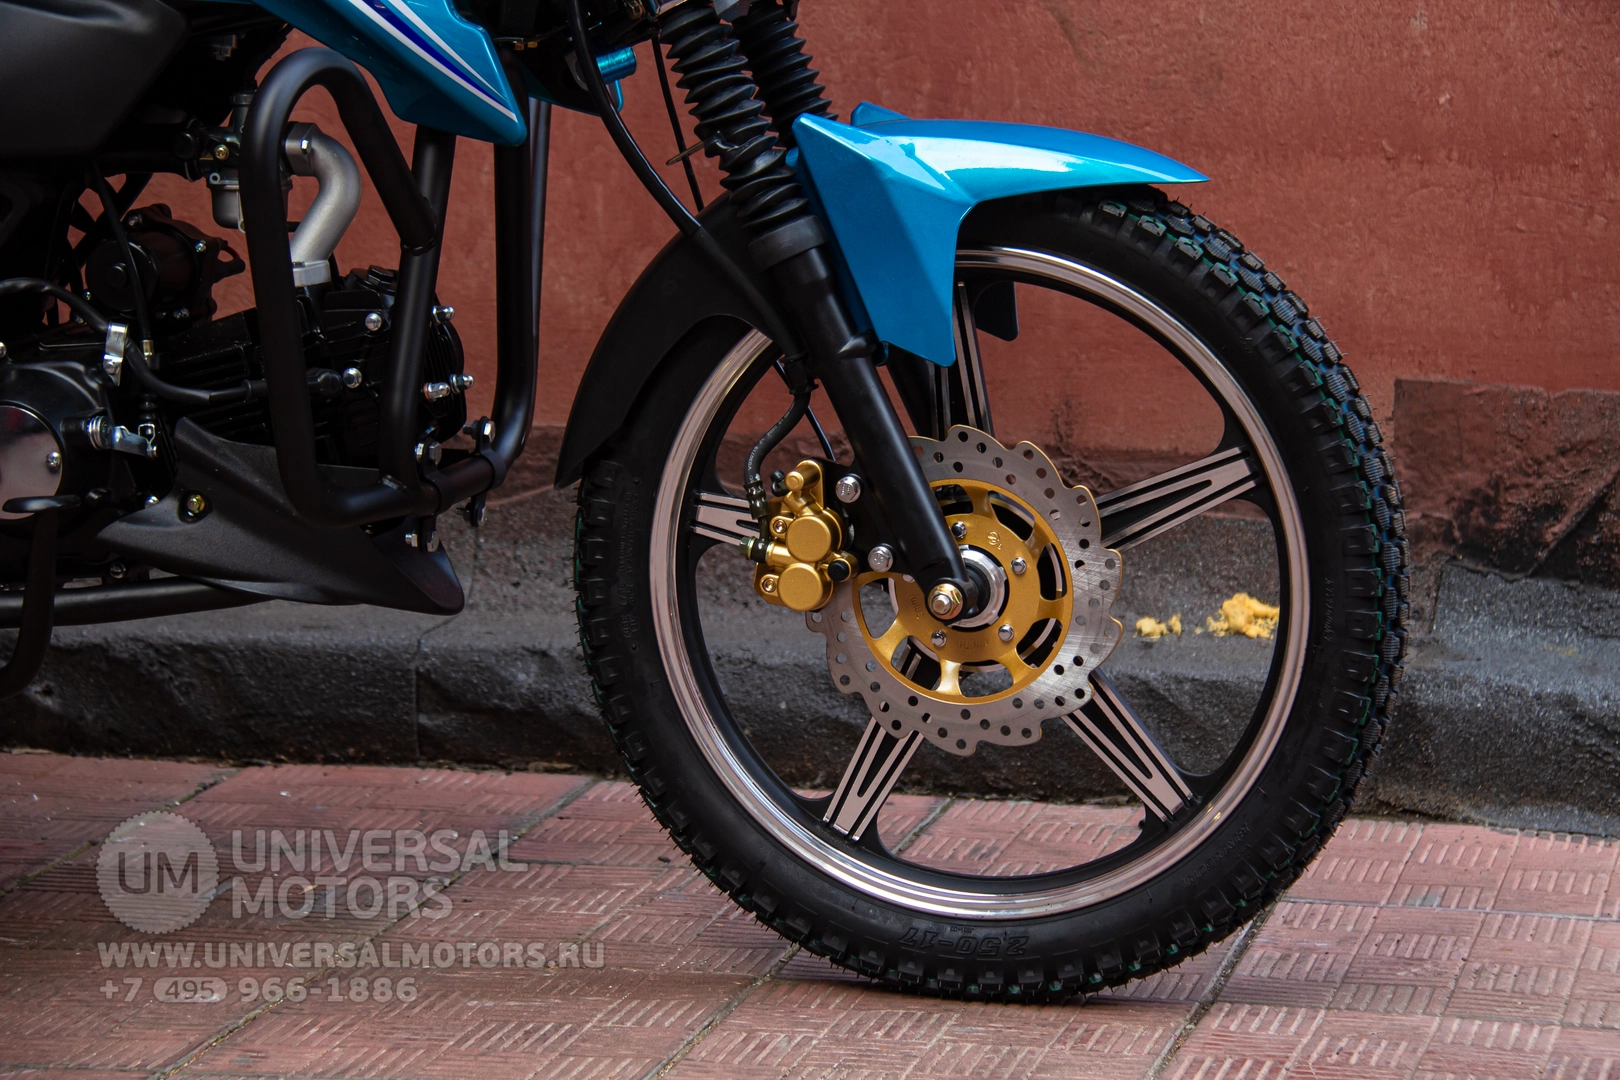 Мотоцикл Universal Alpha CX 125-2 (50), 3909100071127574845